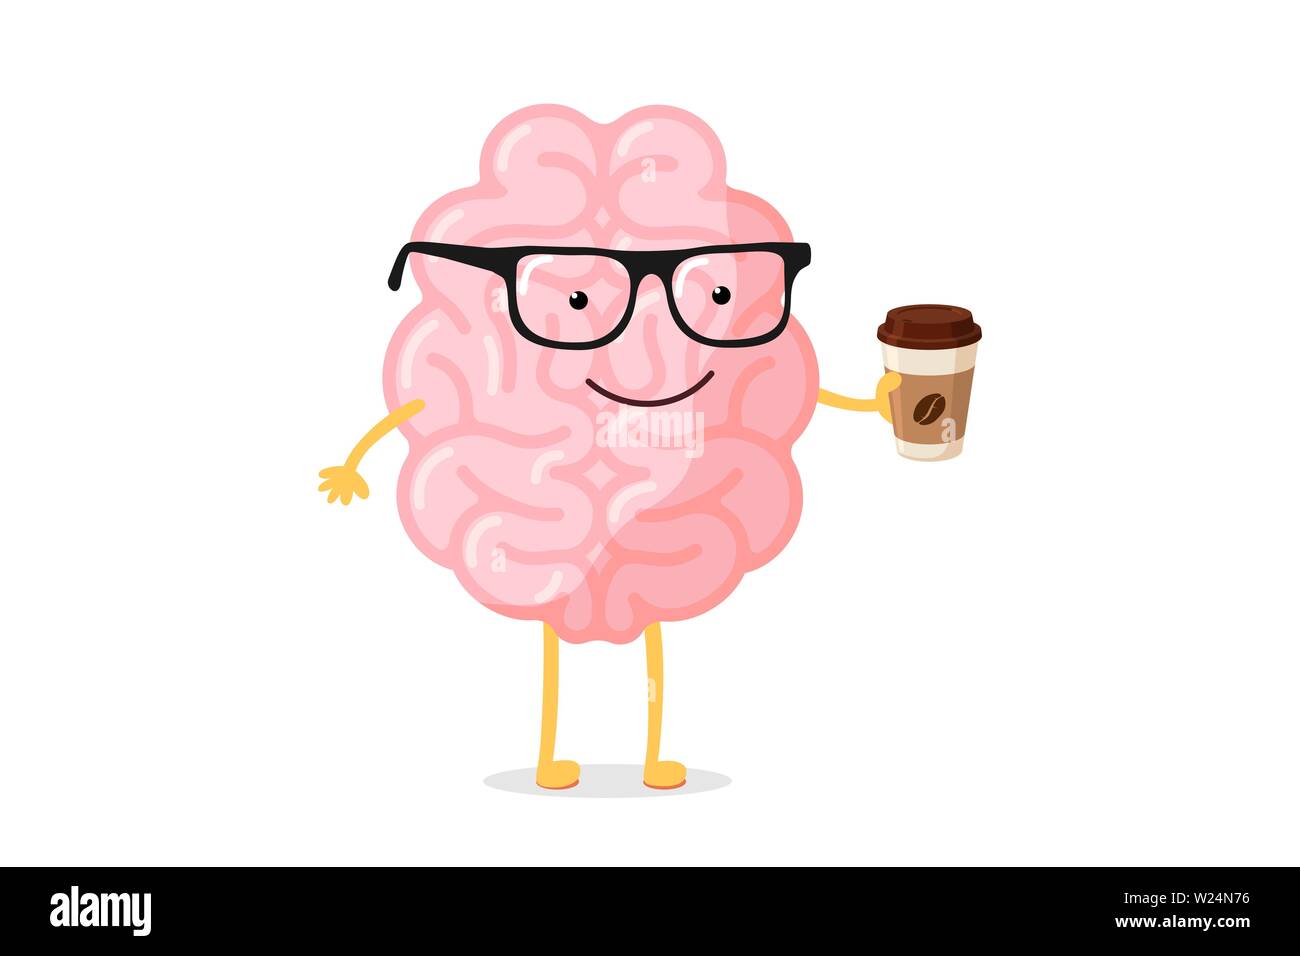 Cartoon smart glücklich lächelnd menschlichen Gehirn Charakter mit Gläsern hält Tasse heißen Getränk Kaffee oder Tee. Zentrale Nervensystem Organ aufwachen Guten Morgen lustiges Konzept. Flache Vektorgrafik Stock Vektor